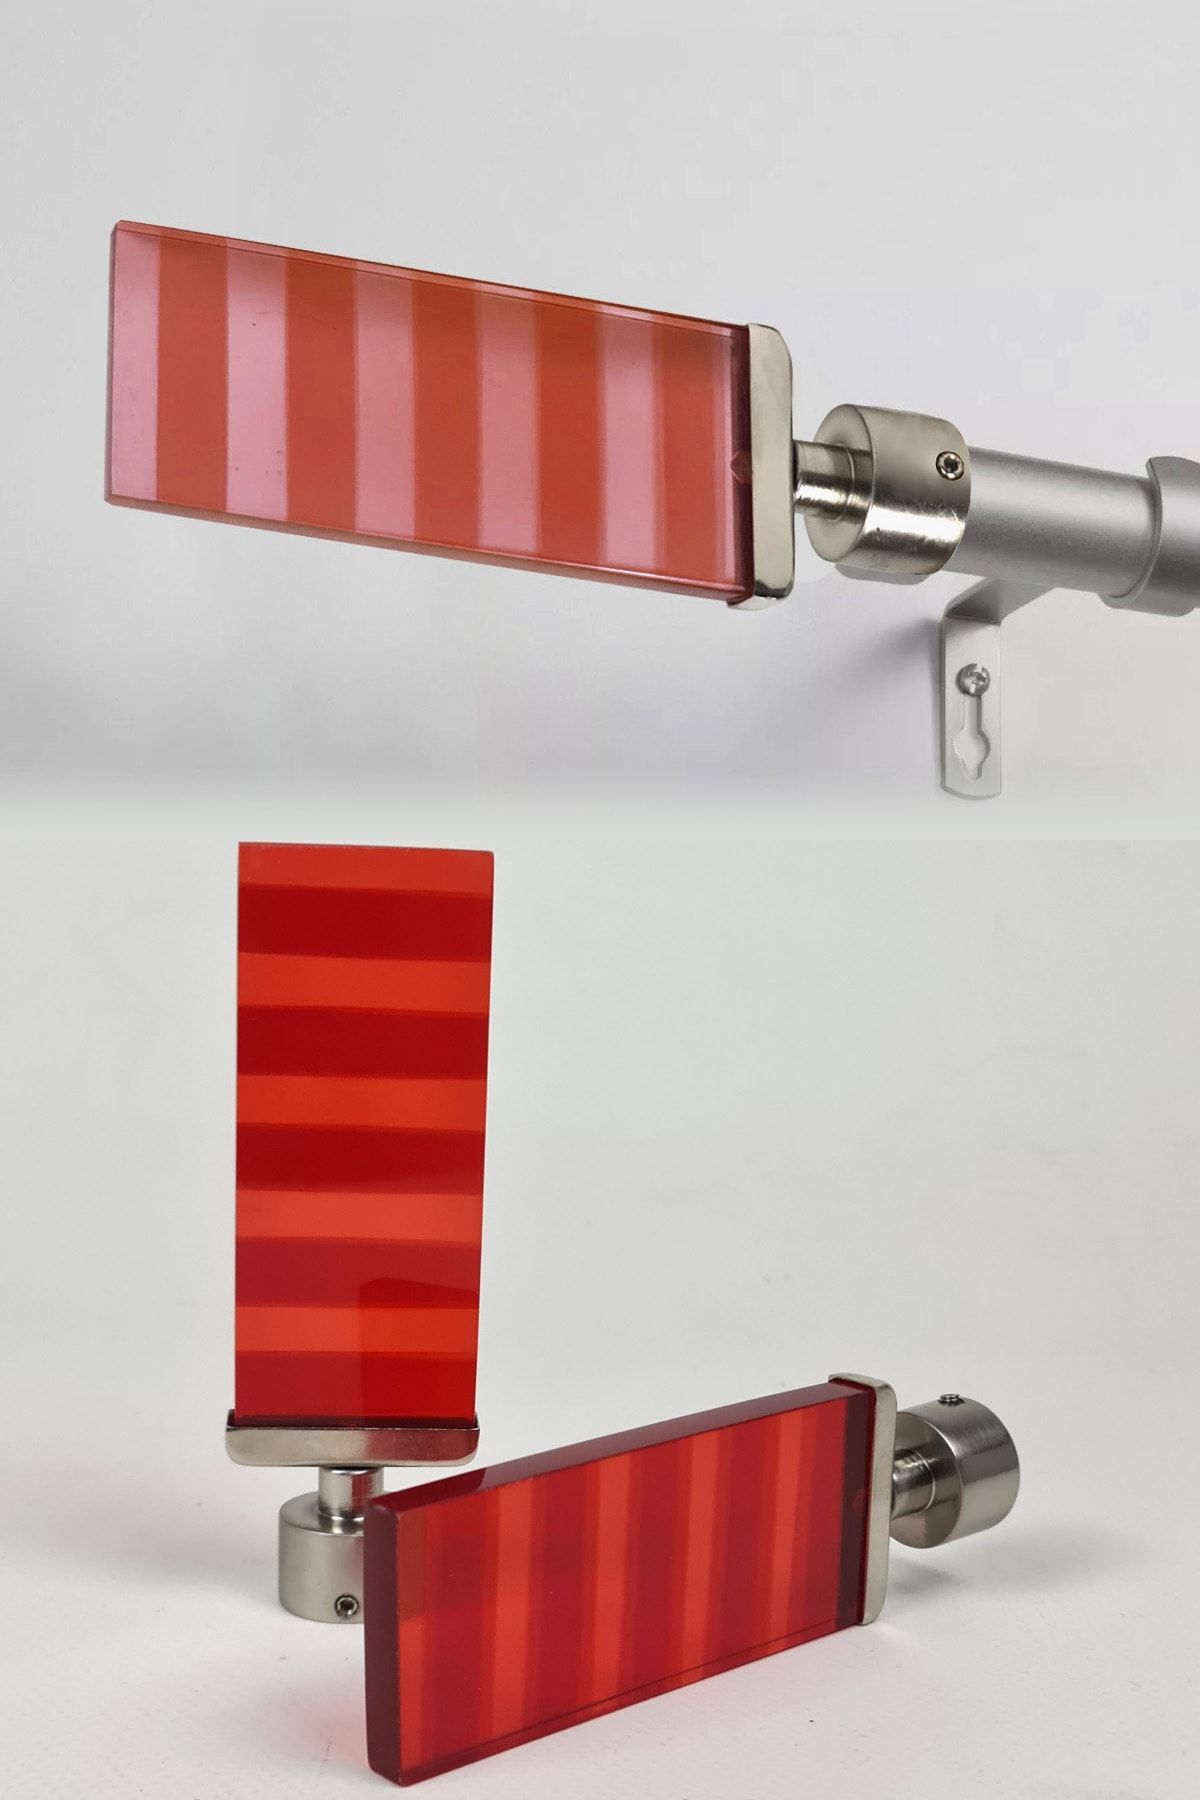 Binbirreyon Rustik Perde Borusu Başlığı 2 Adetli Set Kırmızı Akrilik 19mm Kd013